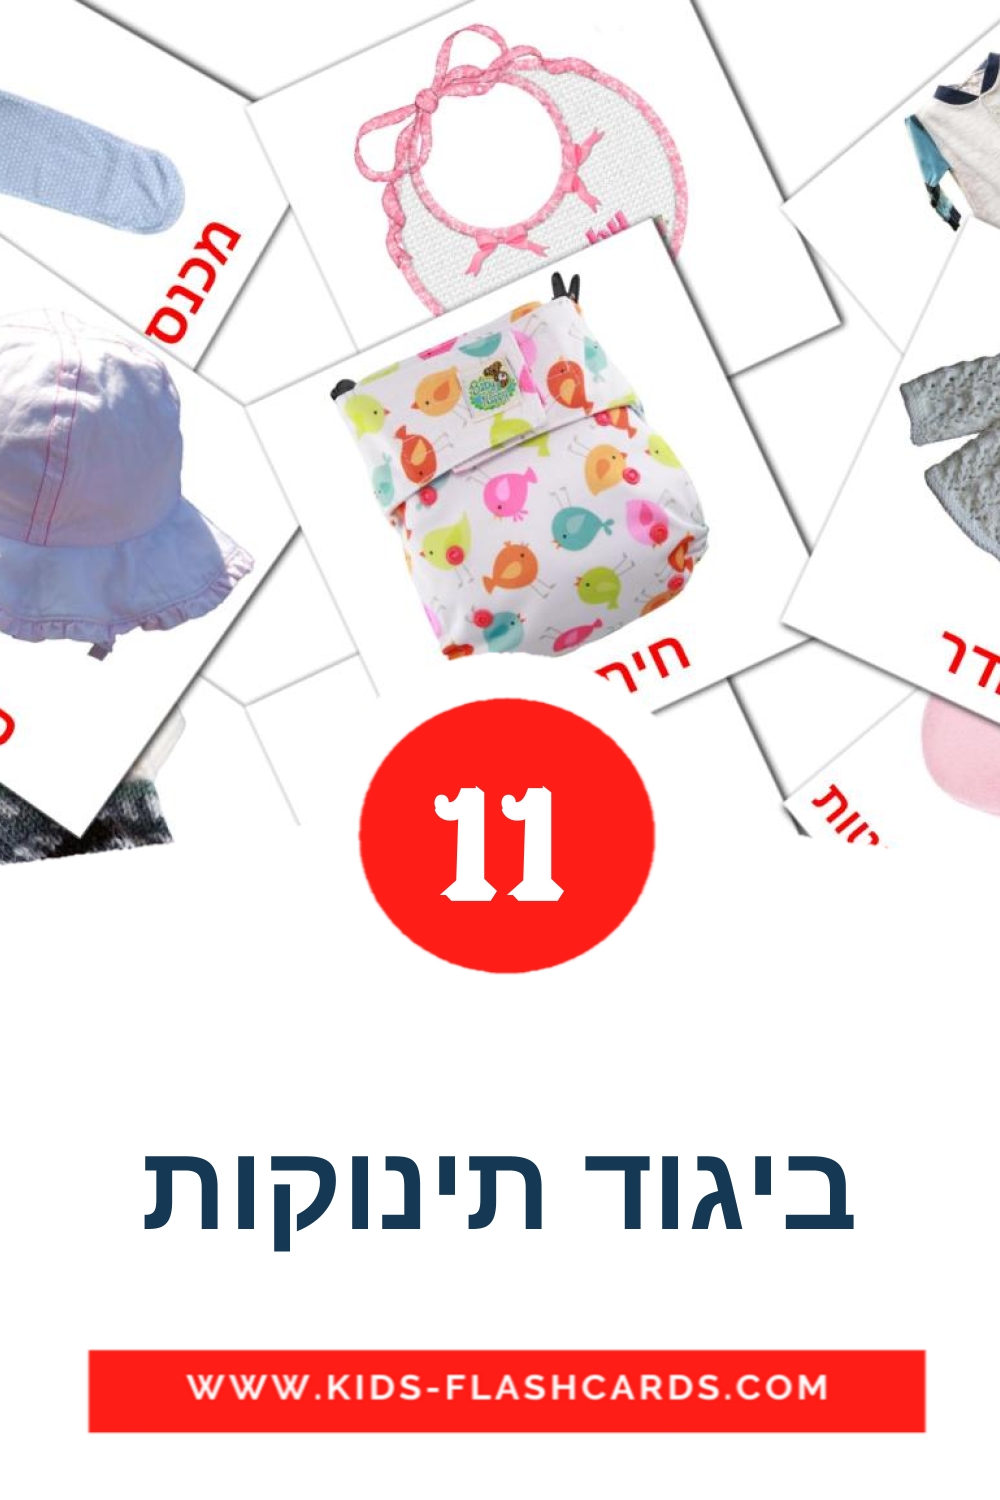 11 ביגוד תינוקות fotokaarten voor kleuters in het hebreeuws